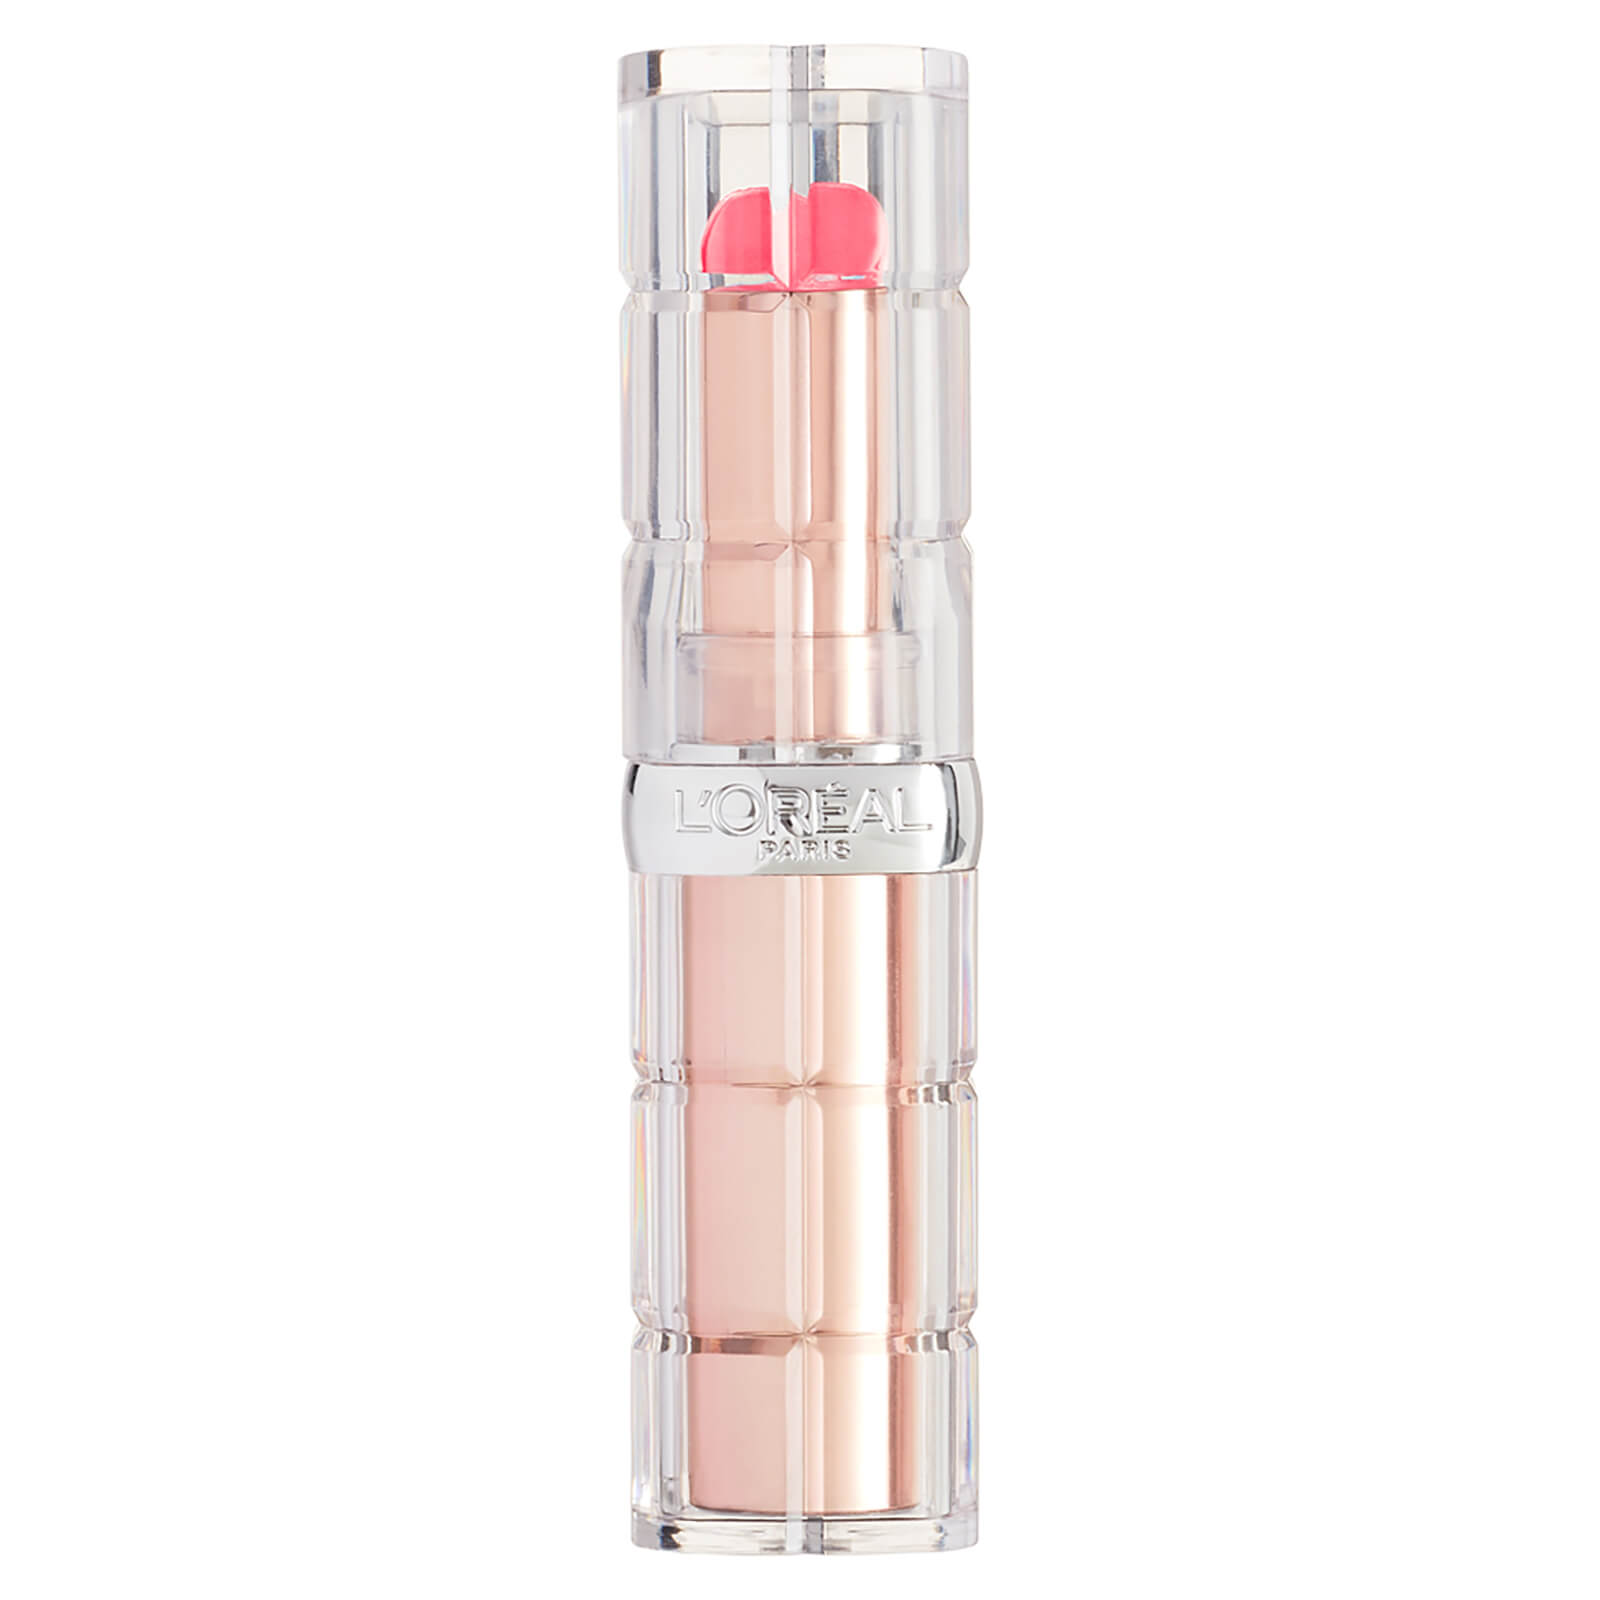 L'Oréal Paris L'Oreal Paris Color Riche Plump and Shine Lipstick (Various Shades) - 104 Guava